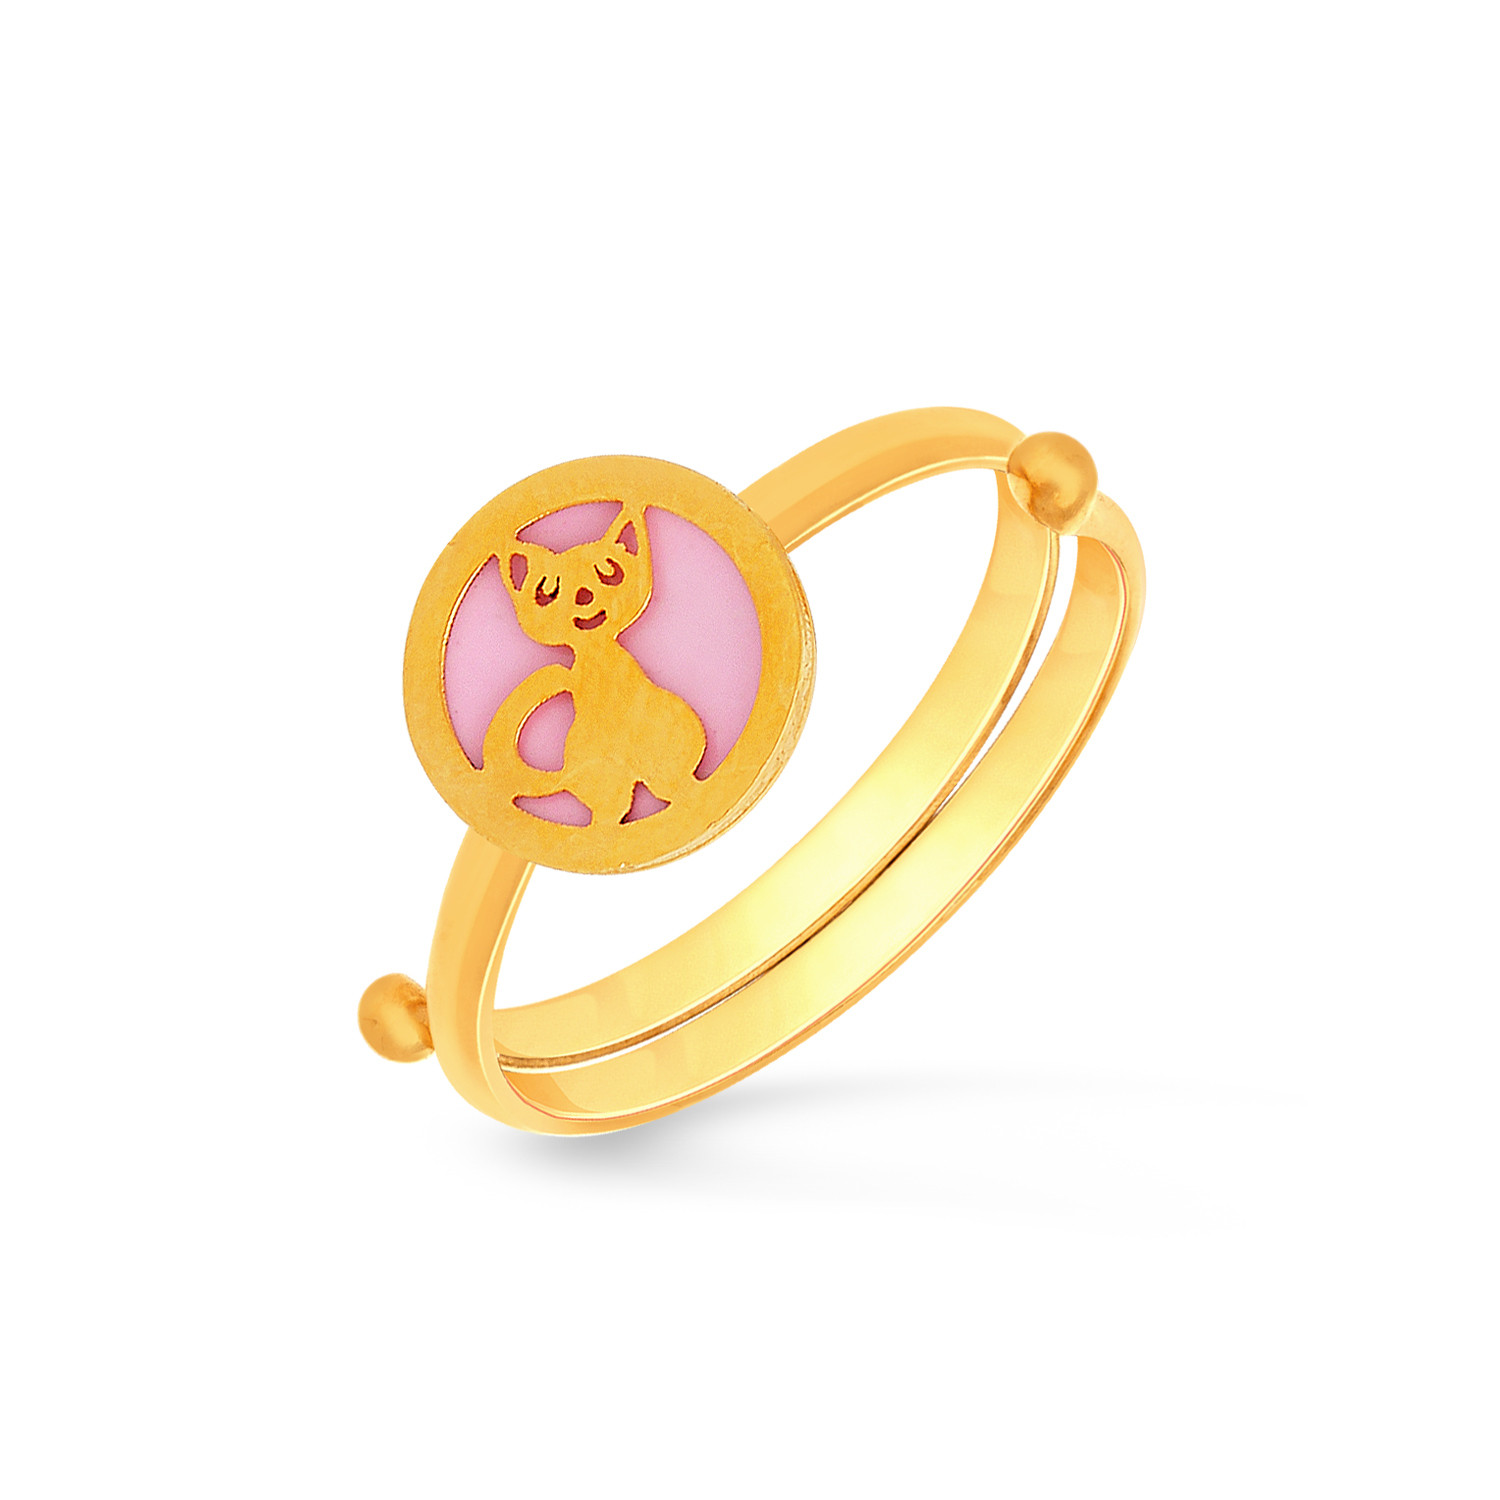 Starlet Gold Ring USRG3323813